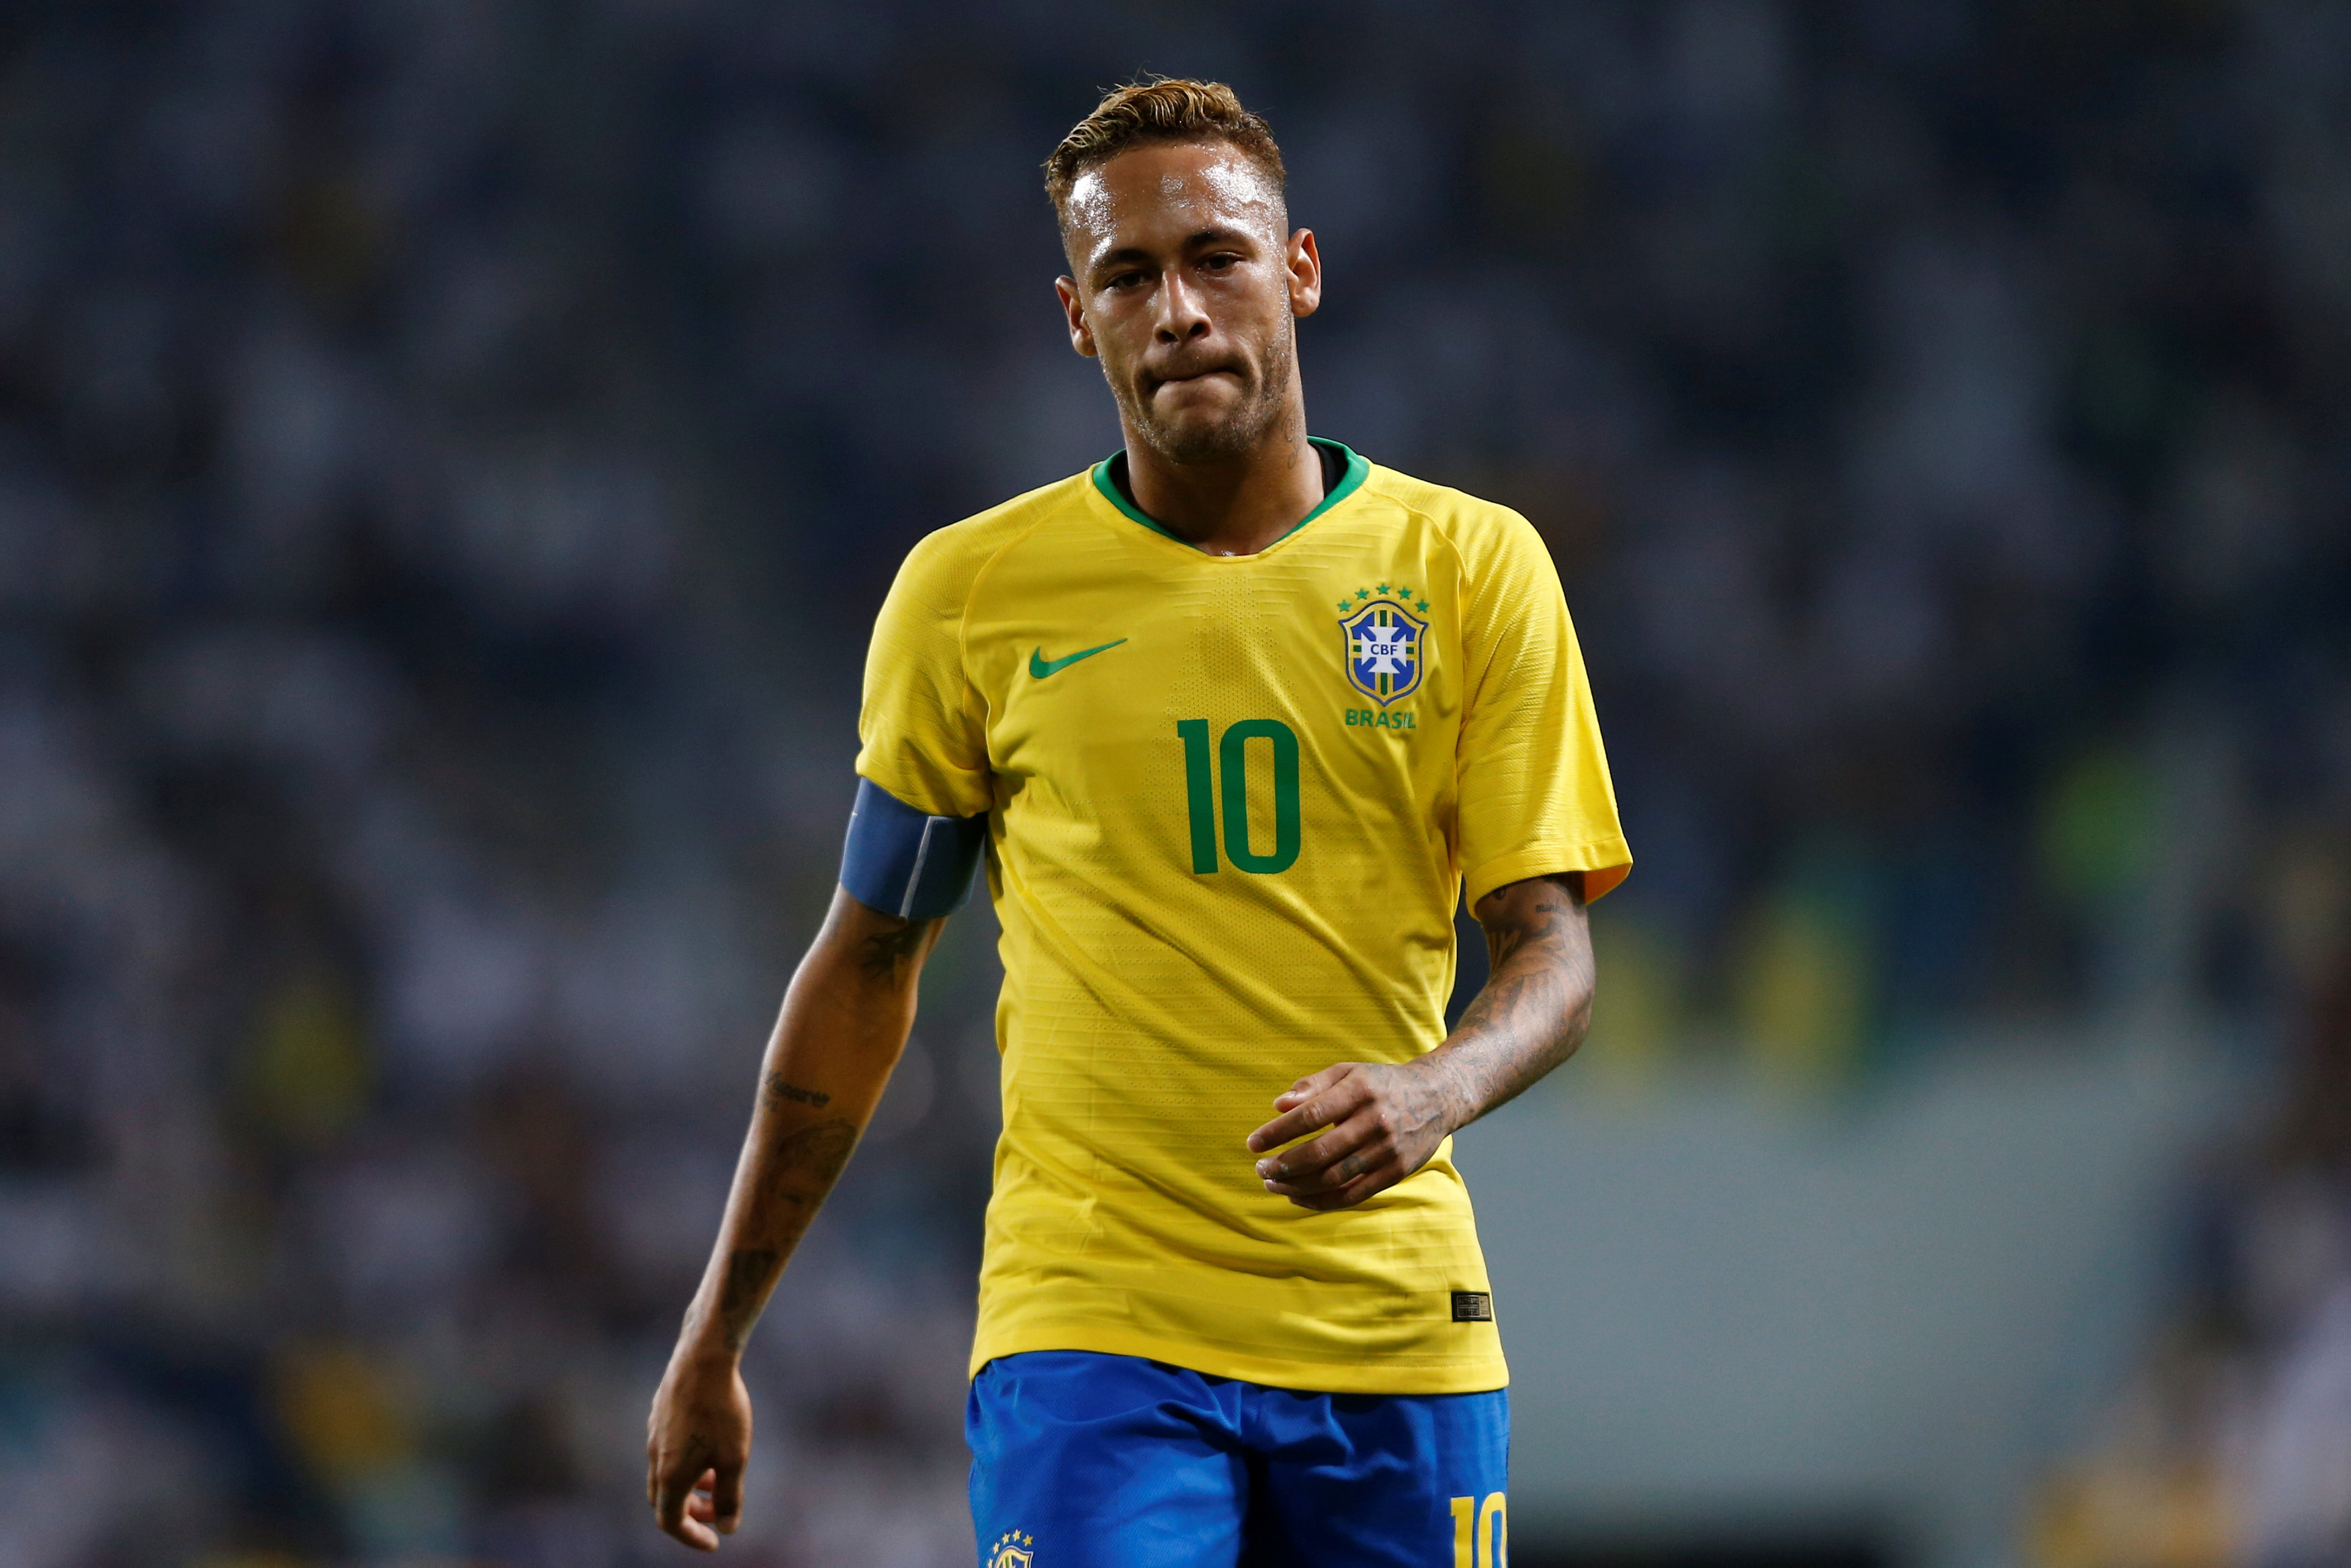 Denuncian por extorsión a modelo que acusó a Neymar de violación